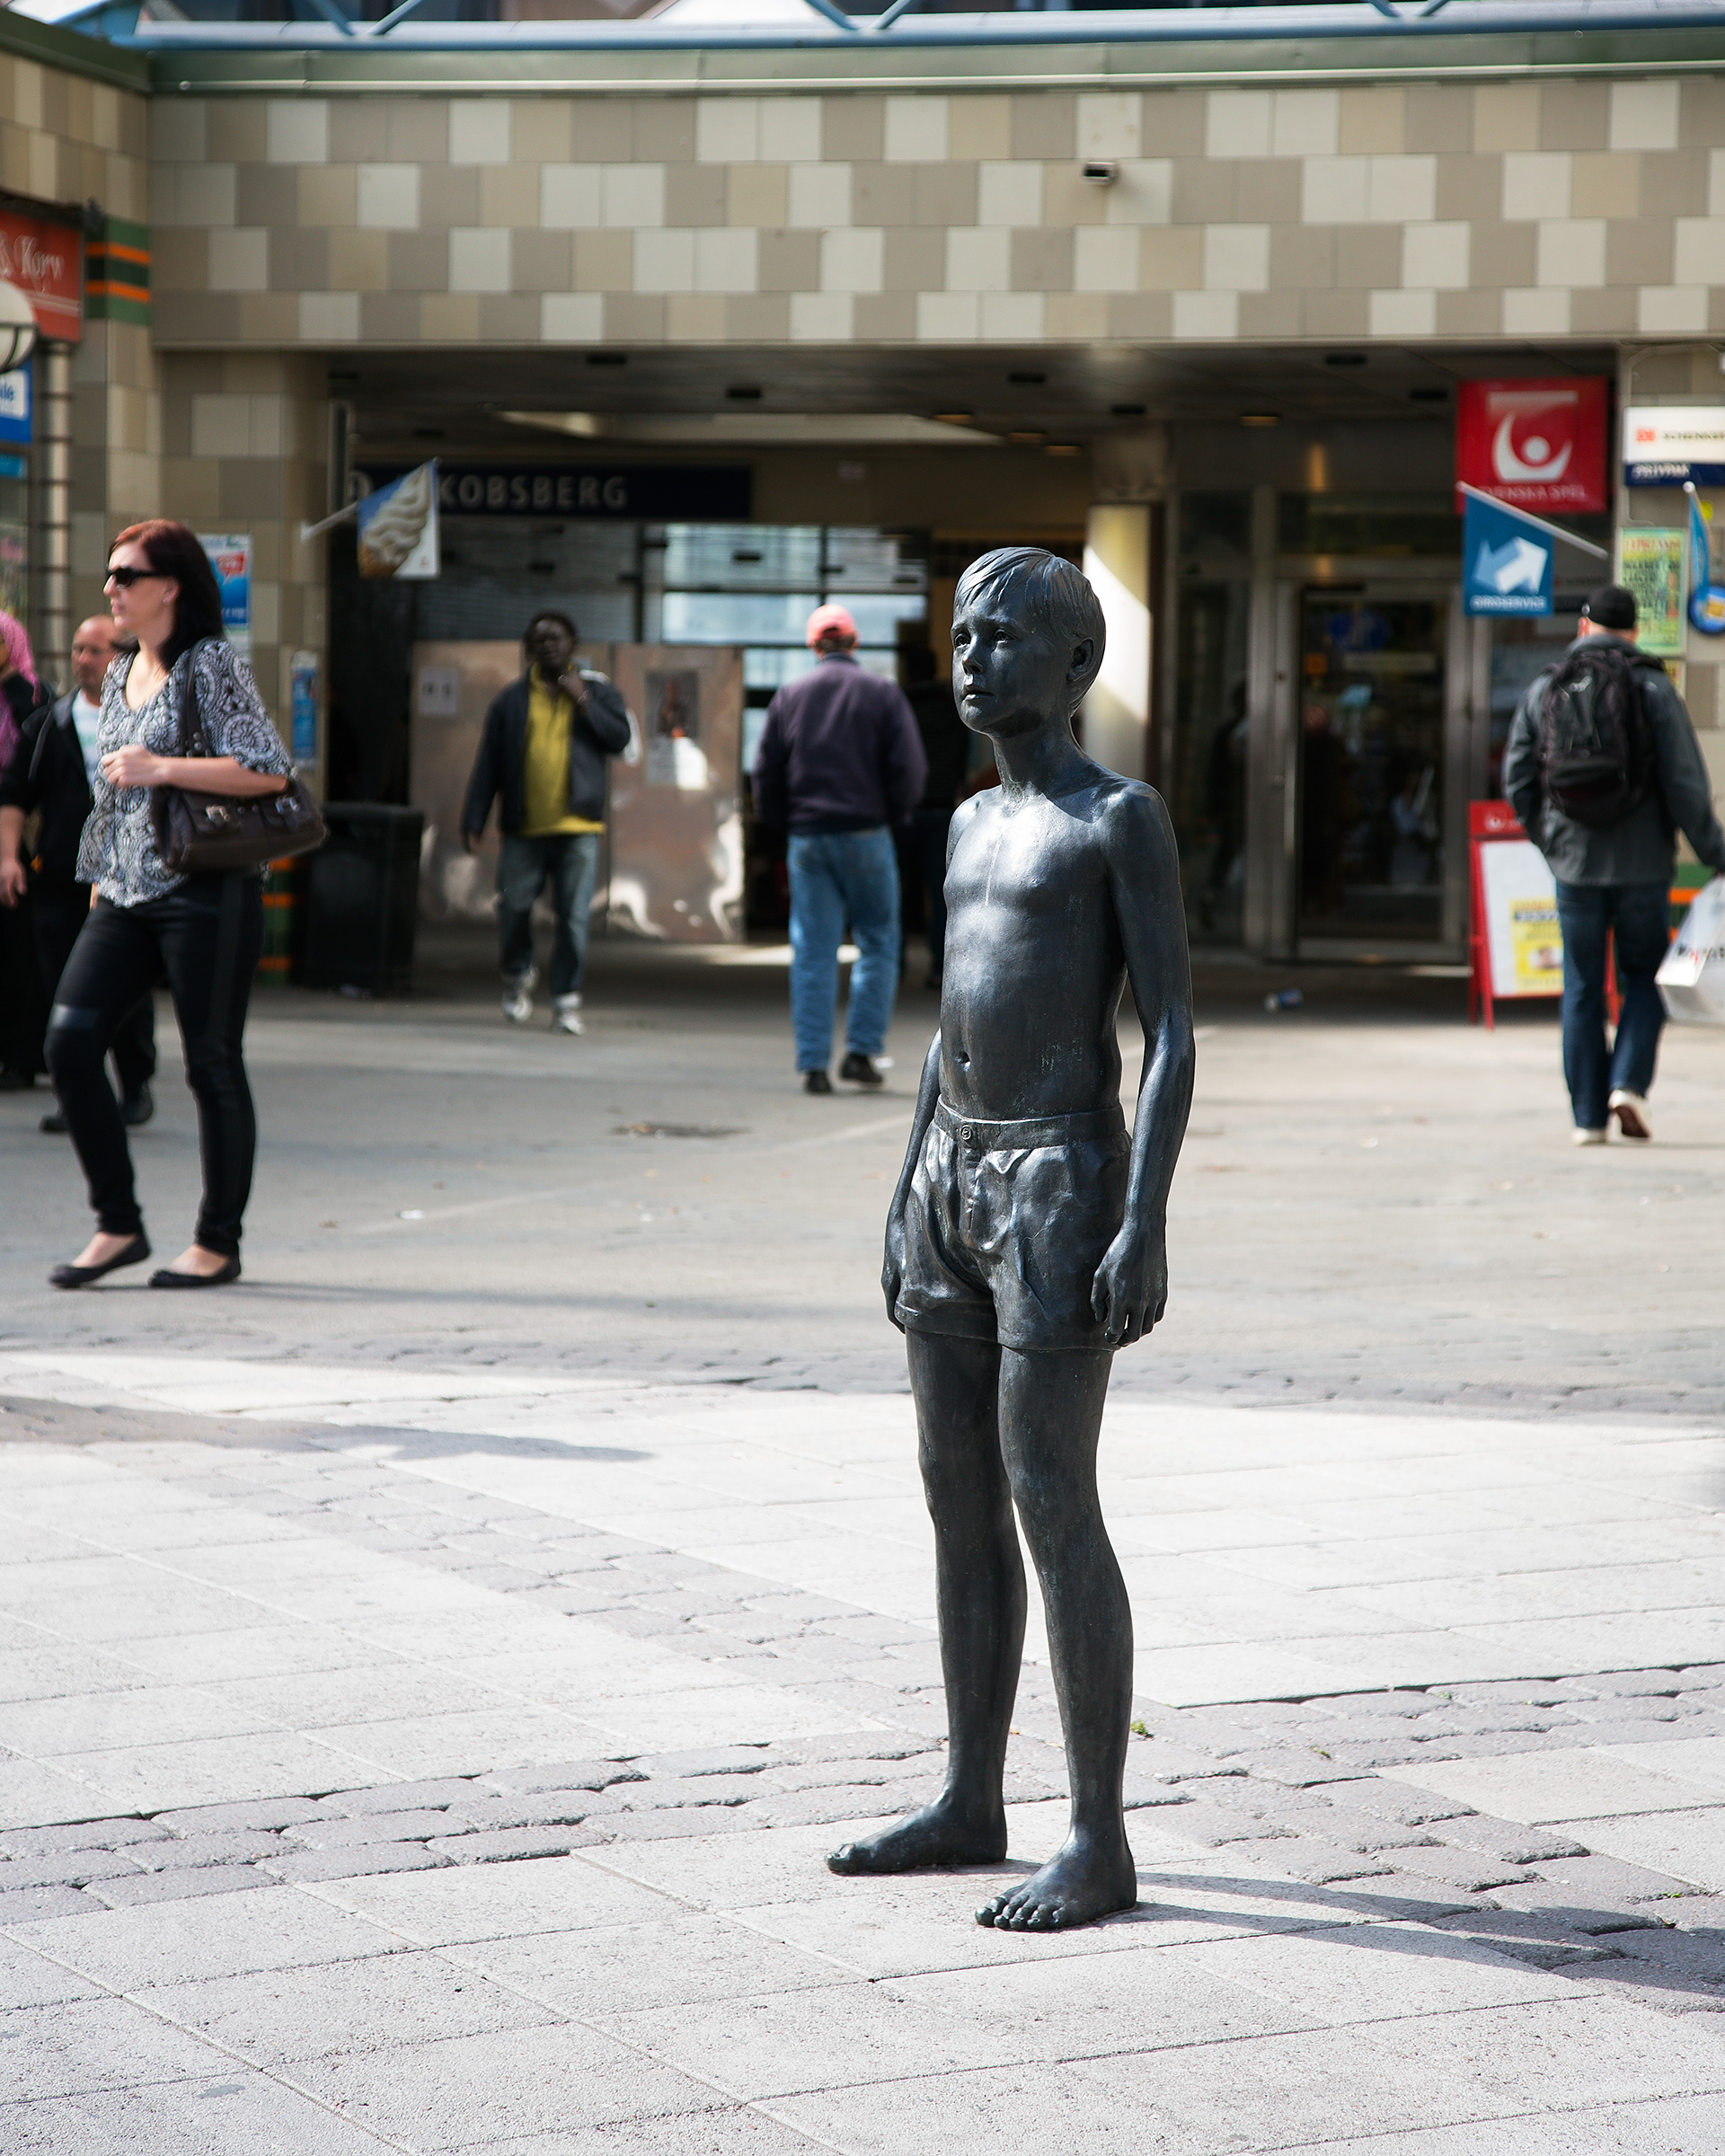 En skulptur i brons av pojke i shorts står i stadsmiljö. Människor och affärer bakom.